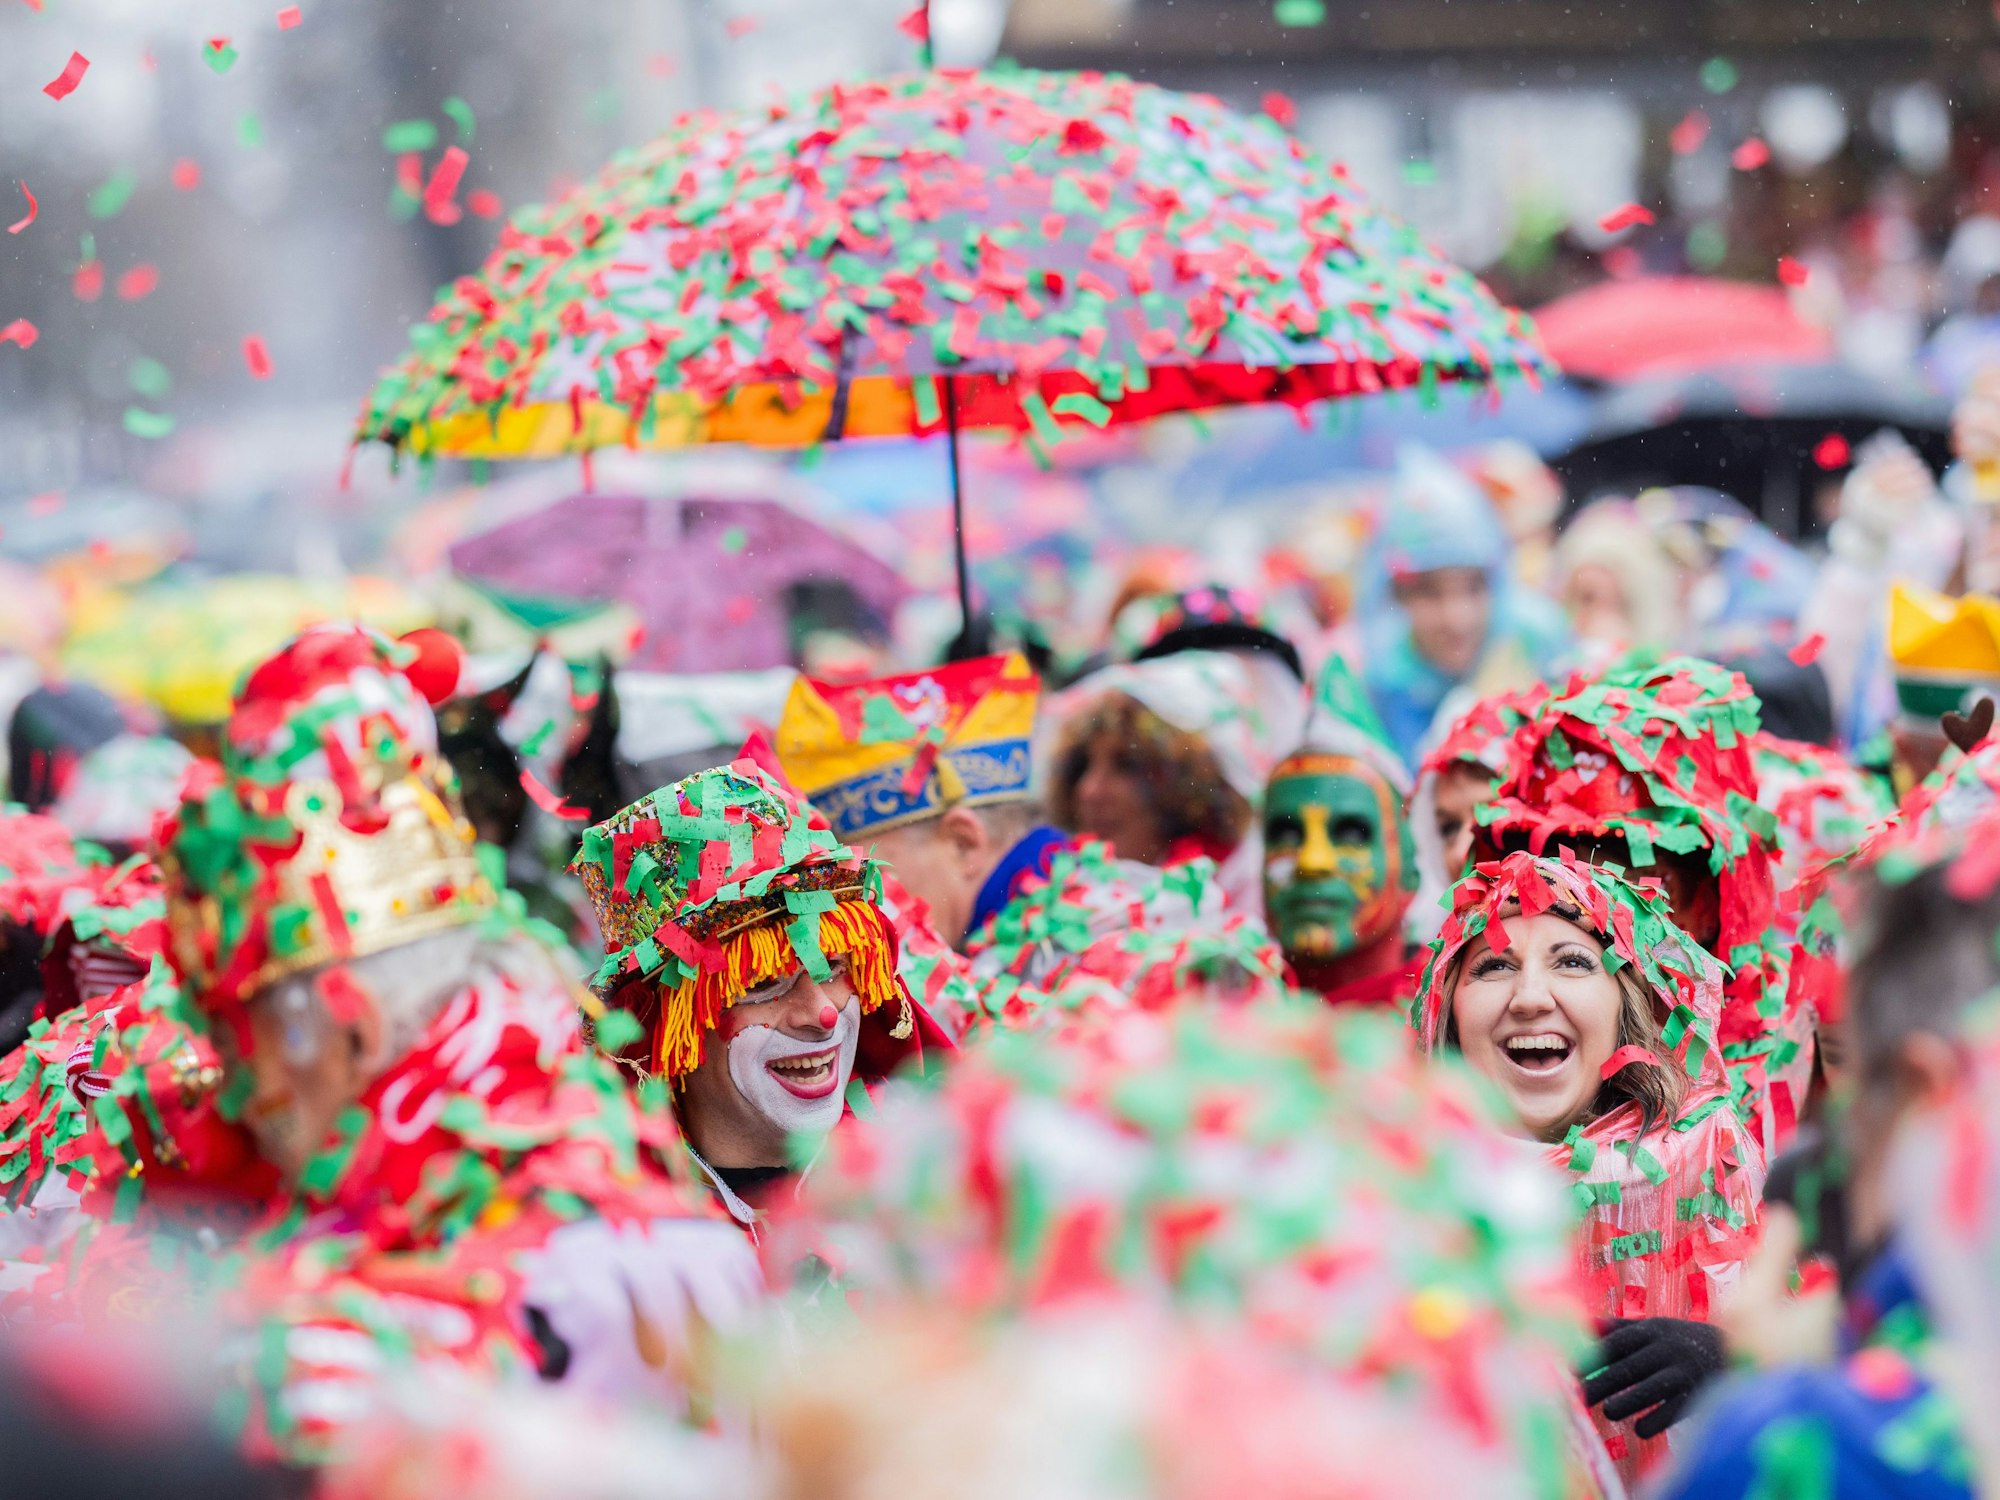 Karnevalisten sind komplett mit nassem Konfetti bedeckt und feiern an Weiberfastnacht die Eröffnung des Straßenkarnevals auf dem Alter Markt.